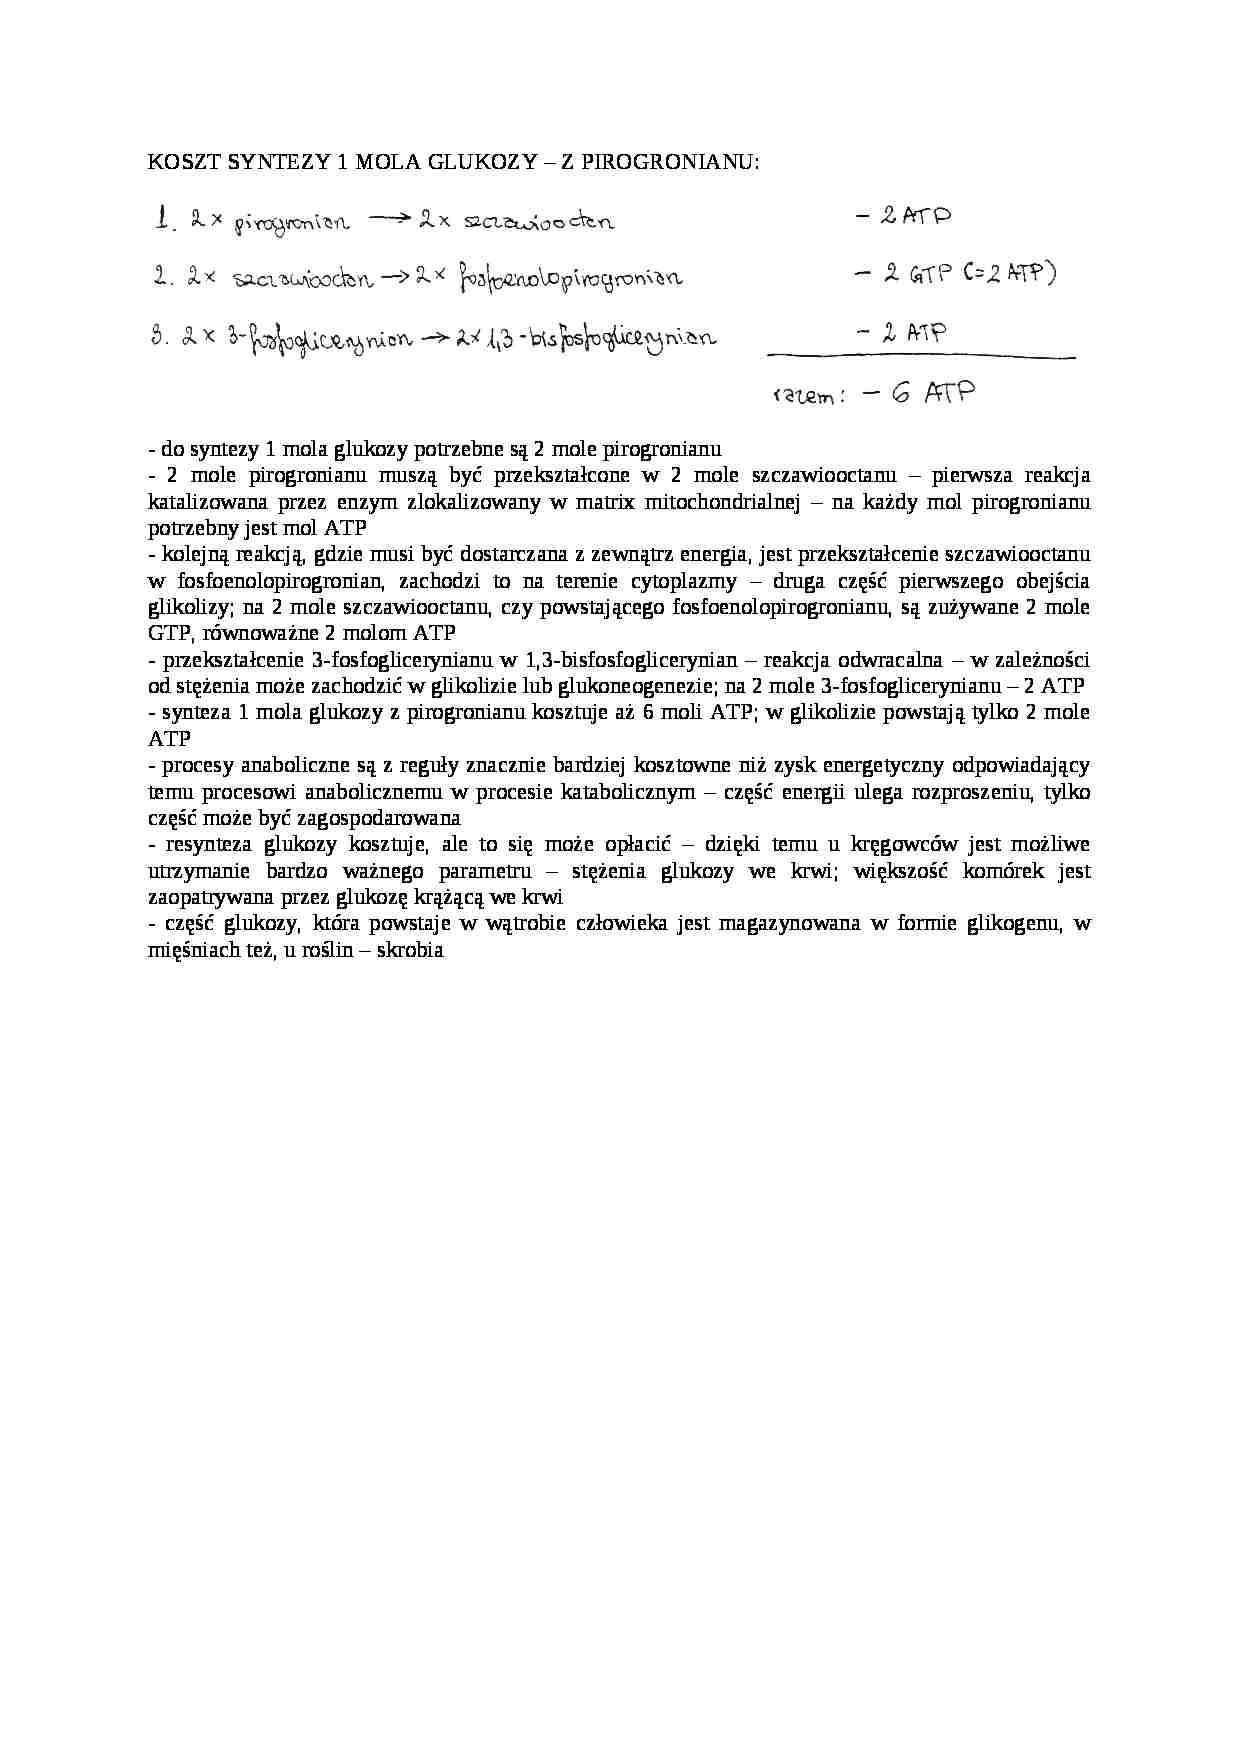 Koszty syntezy 1 mola glukoza-opracowanie - strona 1